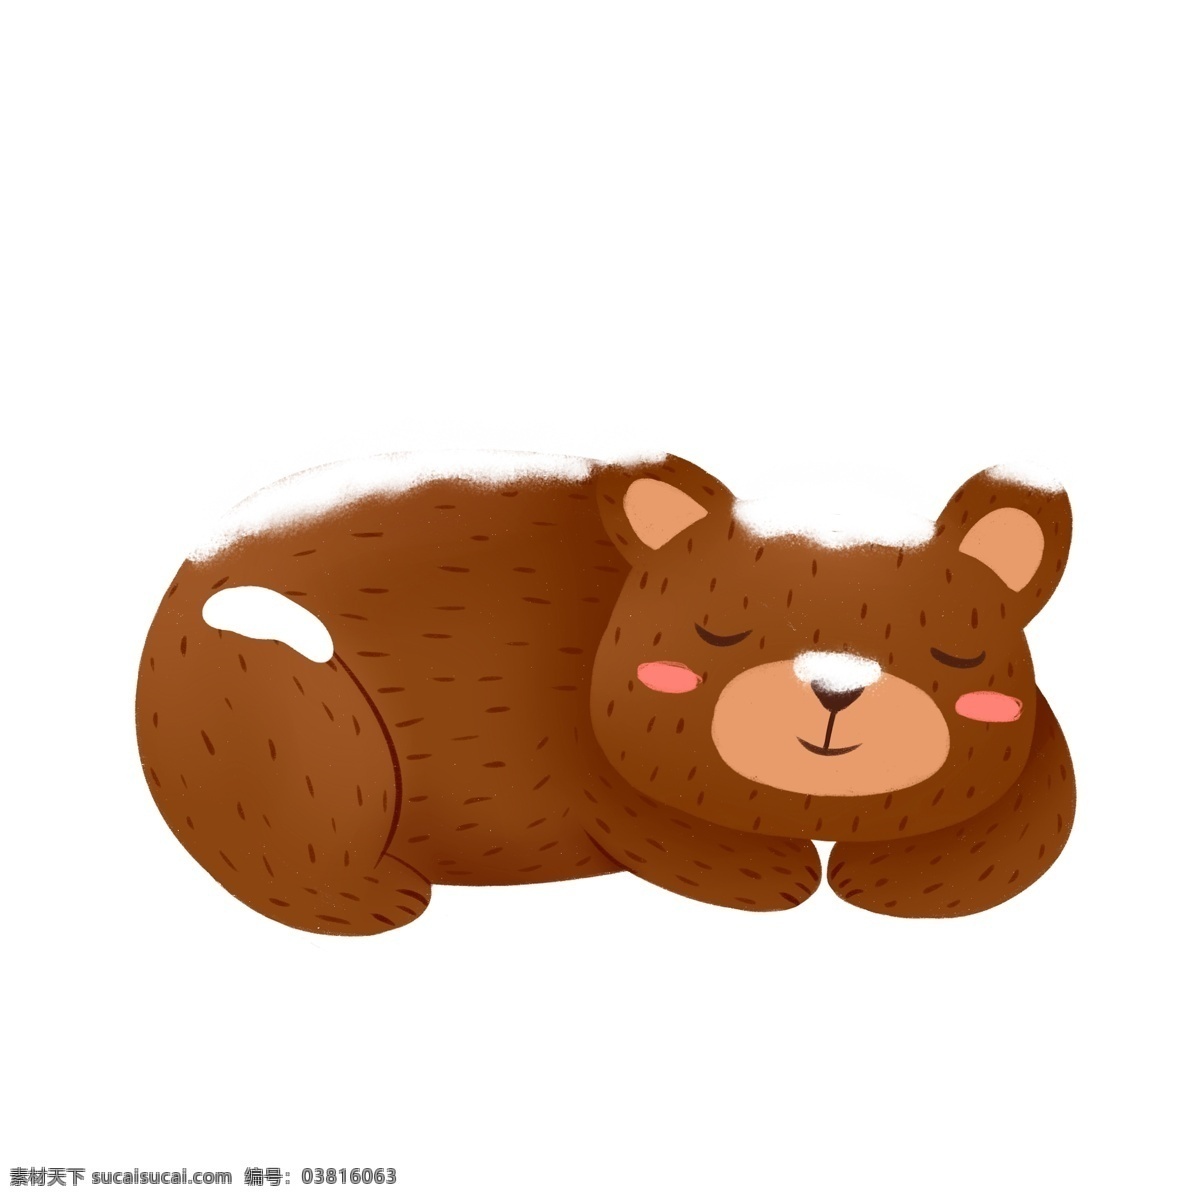 卡通 雪 覆盖 小 熊 商用 元素 动物 小熊 睡觉 插画设计 害羞